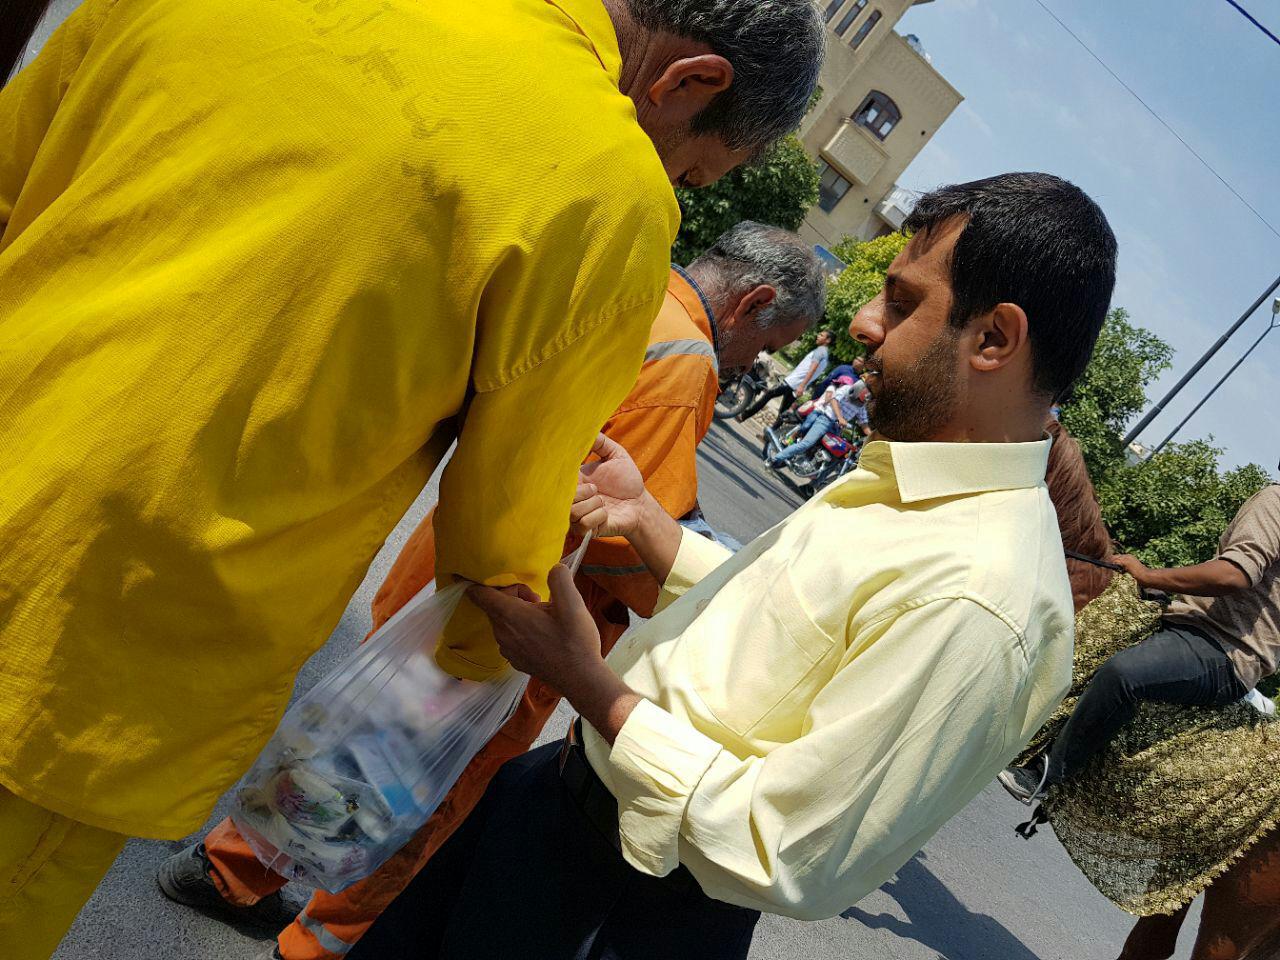 برپایی ایستگاه صلواتی کانون سلاله پاکان در روز عید سعید غدیر